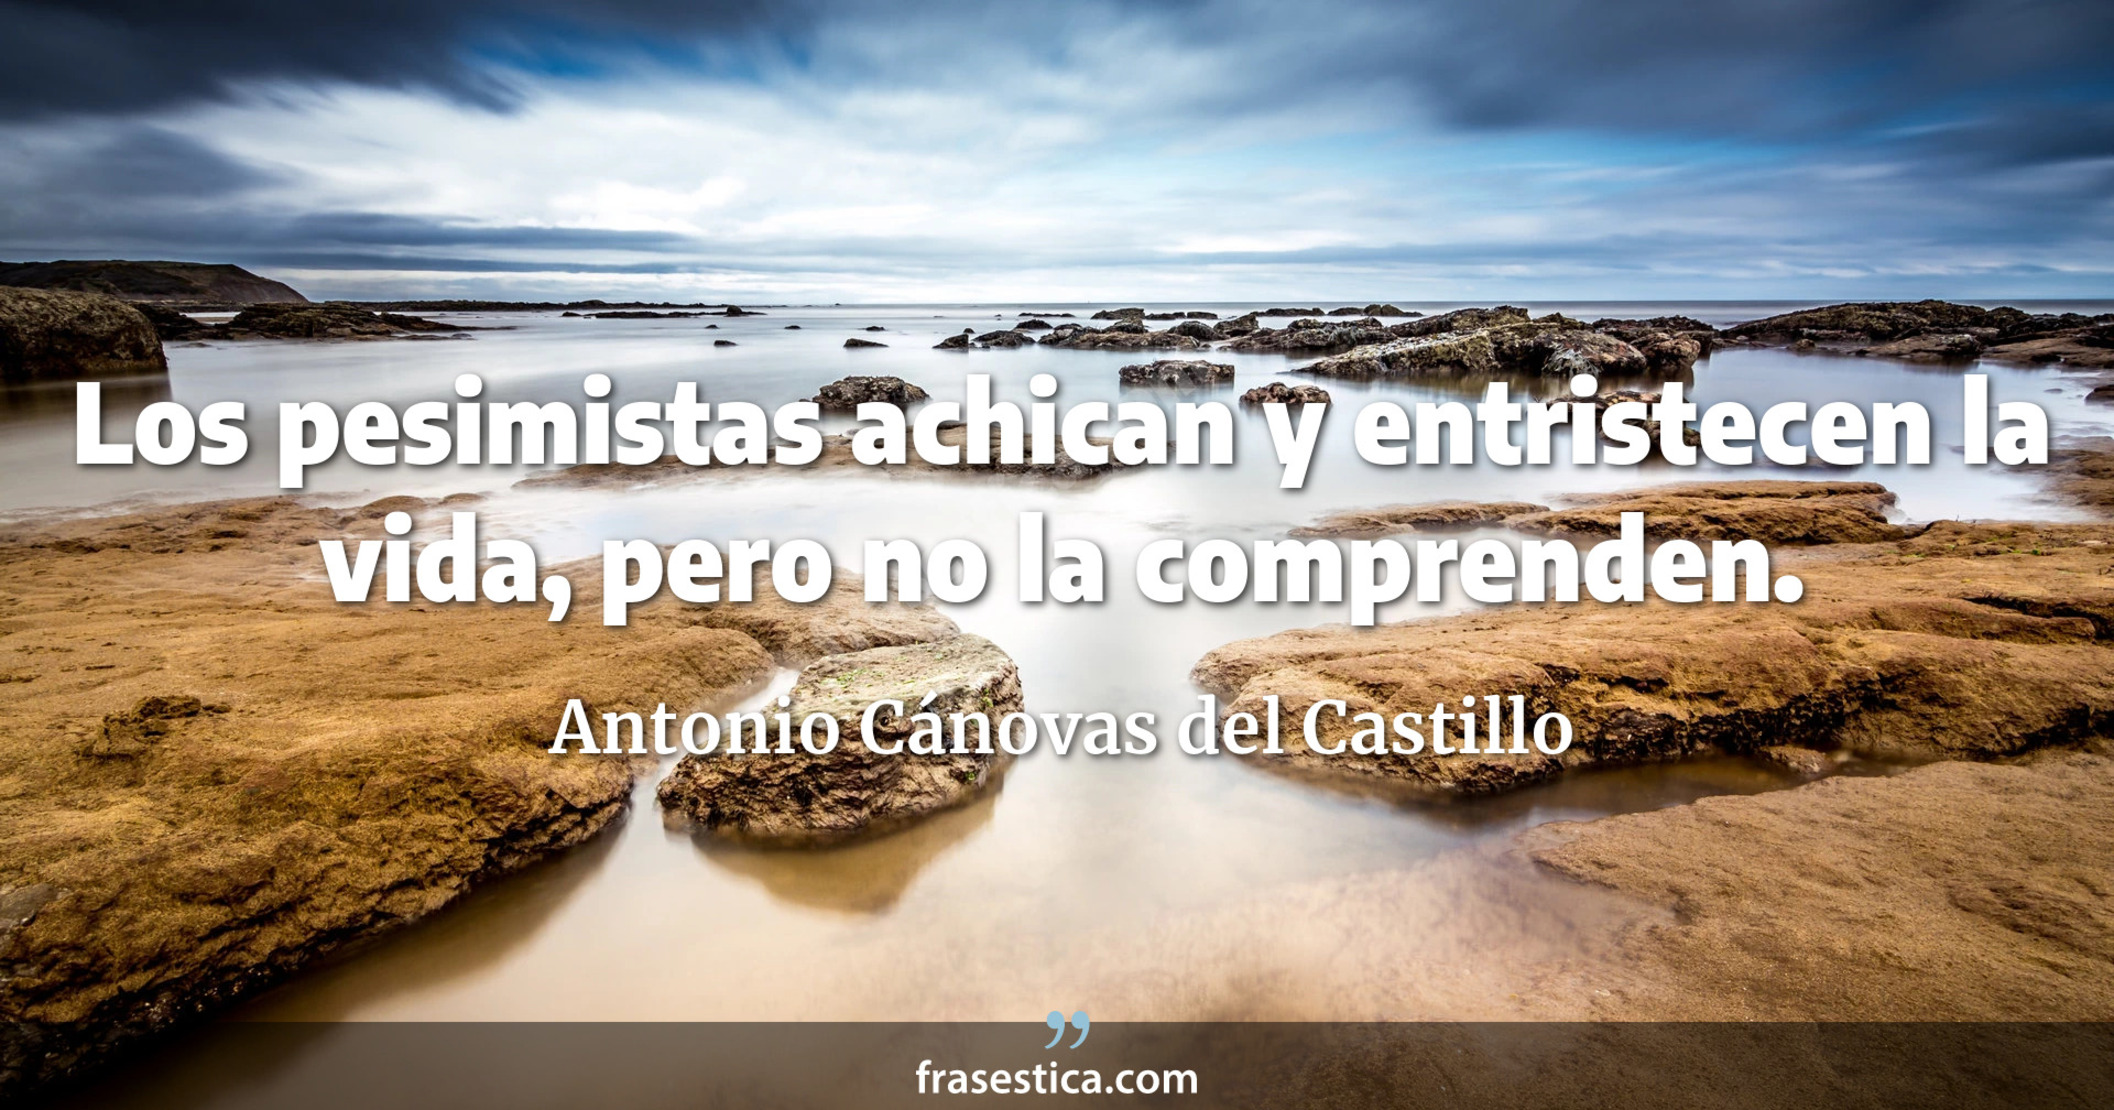 Los pesimistas achican y entristecen la vida, pero no la comprenden. - Antonio Cánovas del Castillo